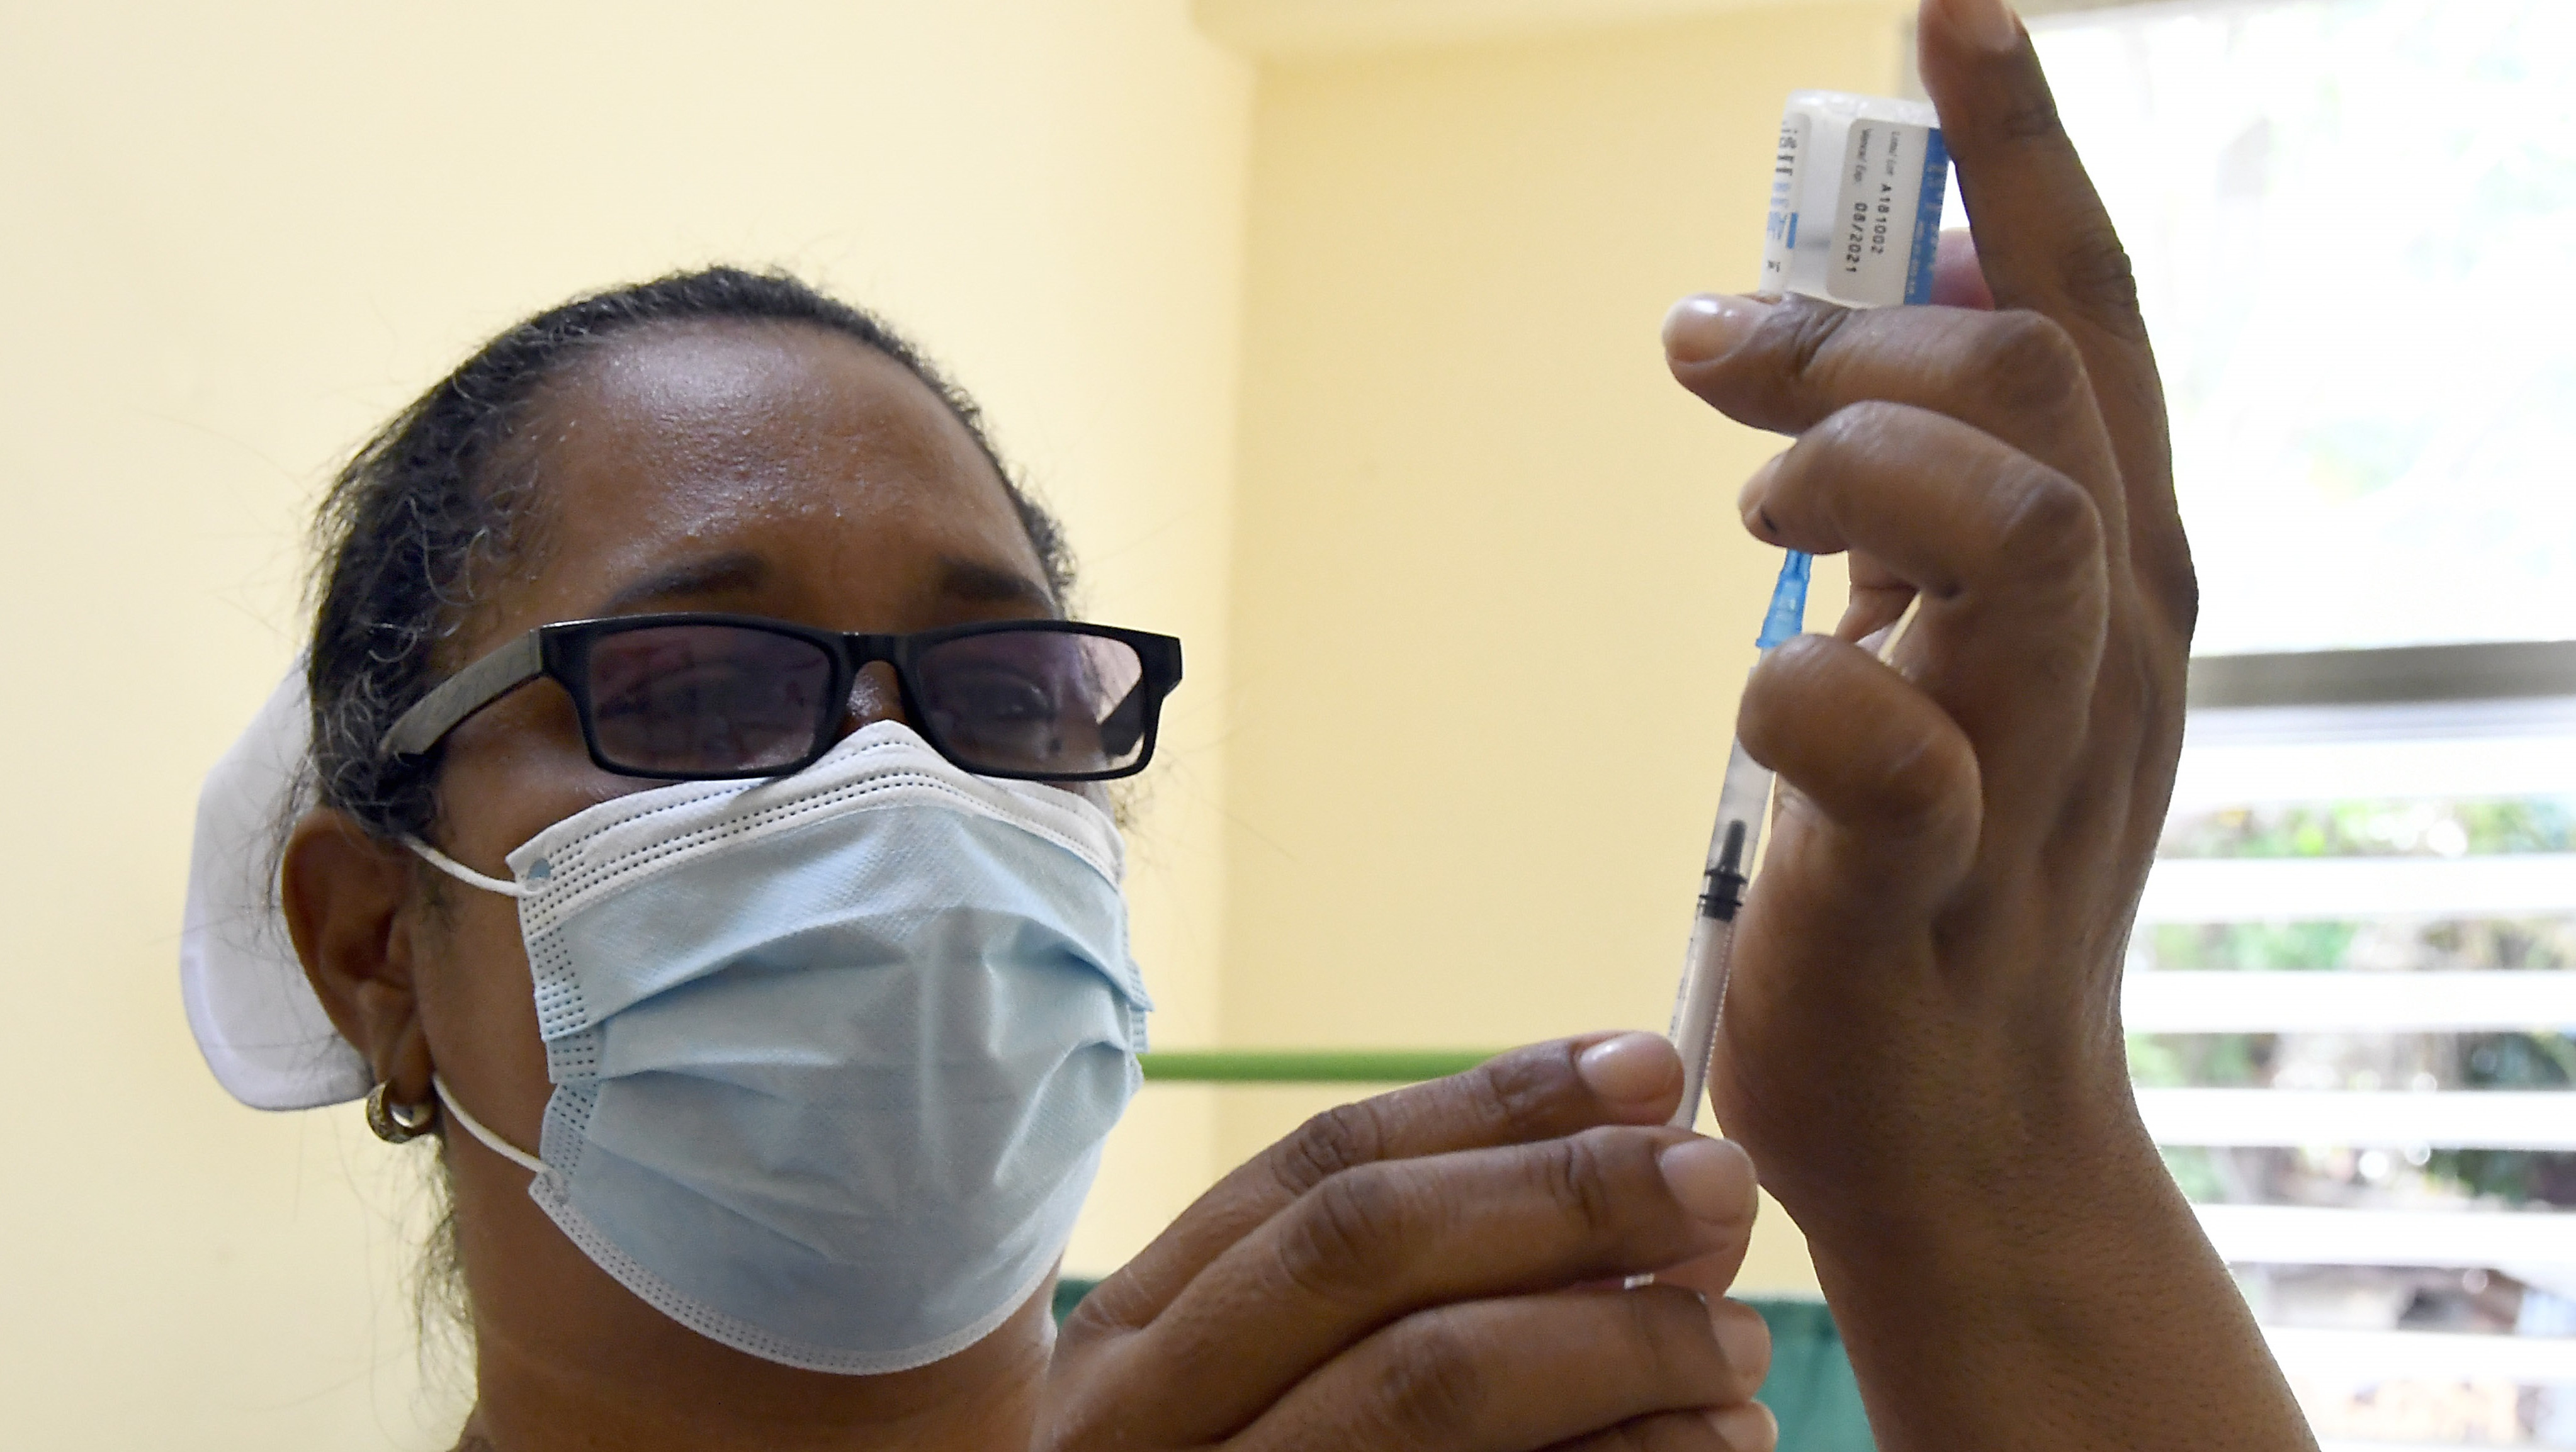 La vacuna contra la covid fabricada en Cuba Abdala presenta una eficacia del 92%